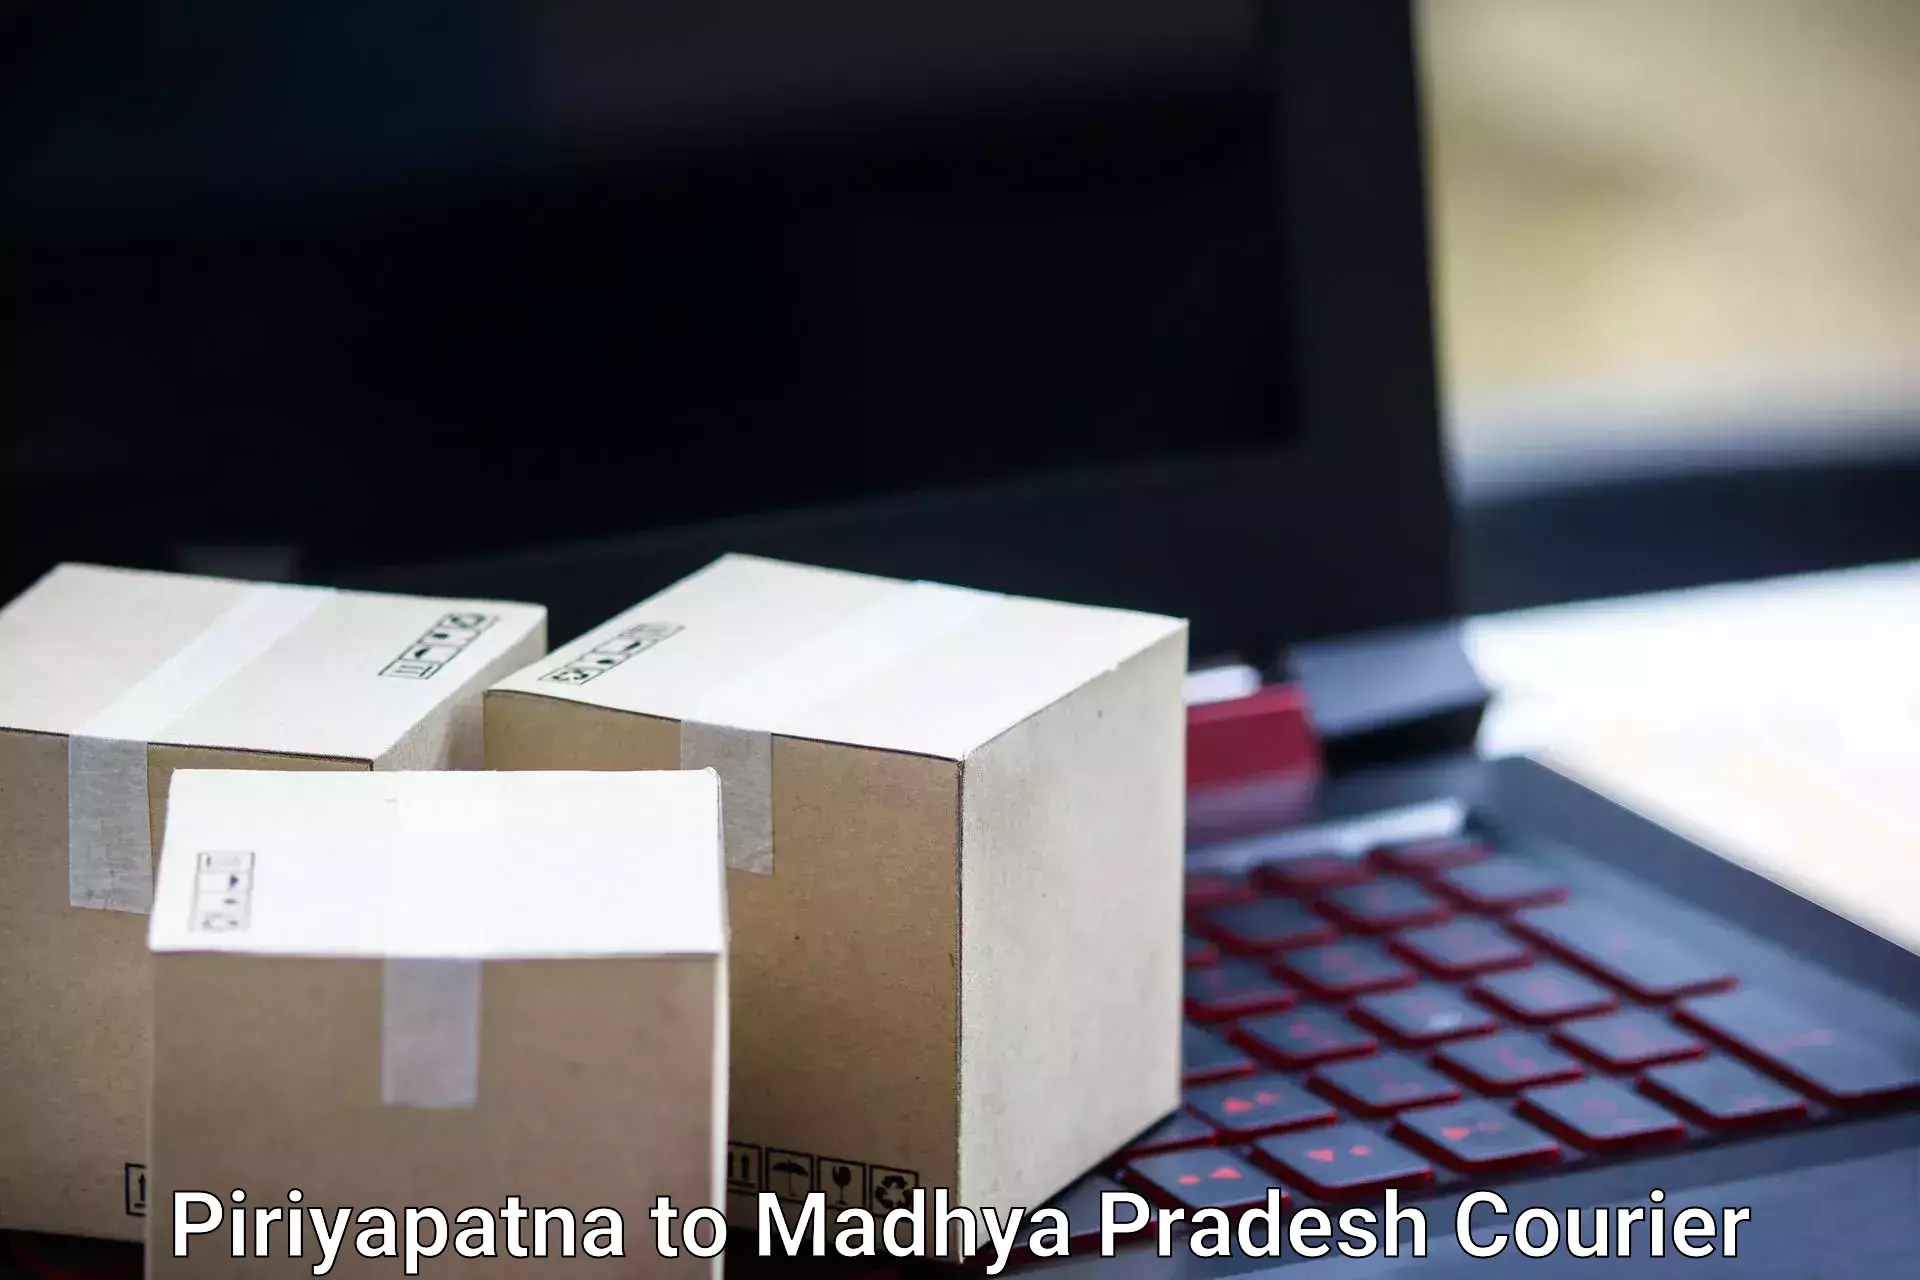 Personal effects shipping Piriyapatna to Nagda